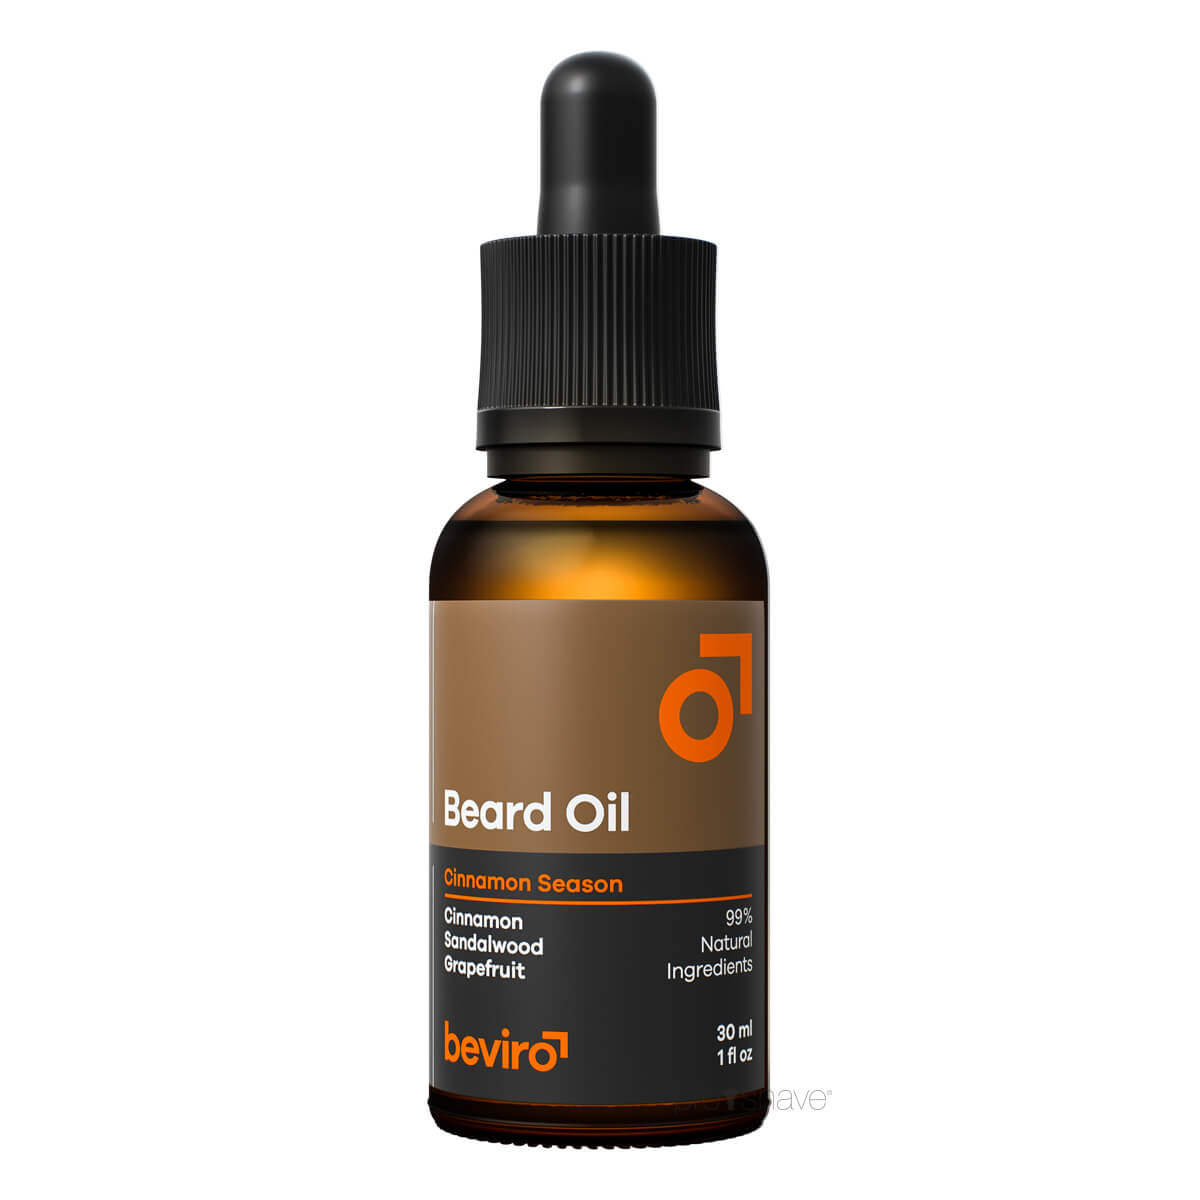 Billede af Beviro Beard Oil, Cinnamon Season, 30 ml.